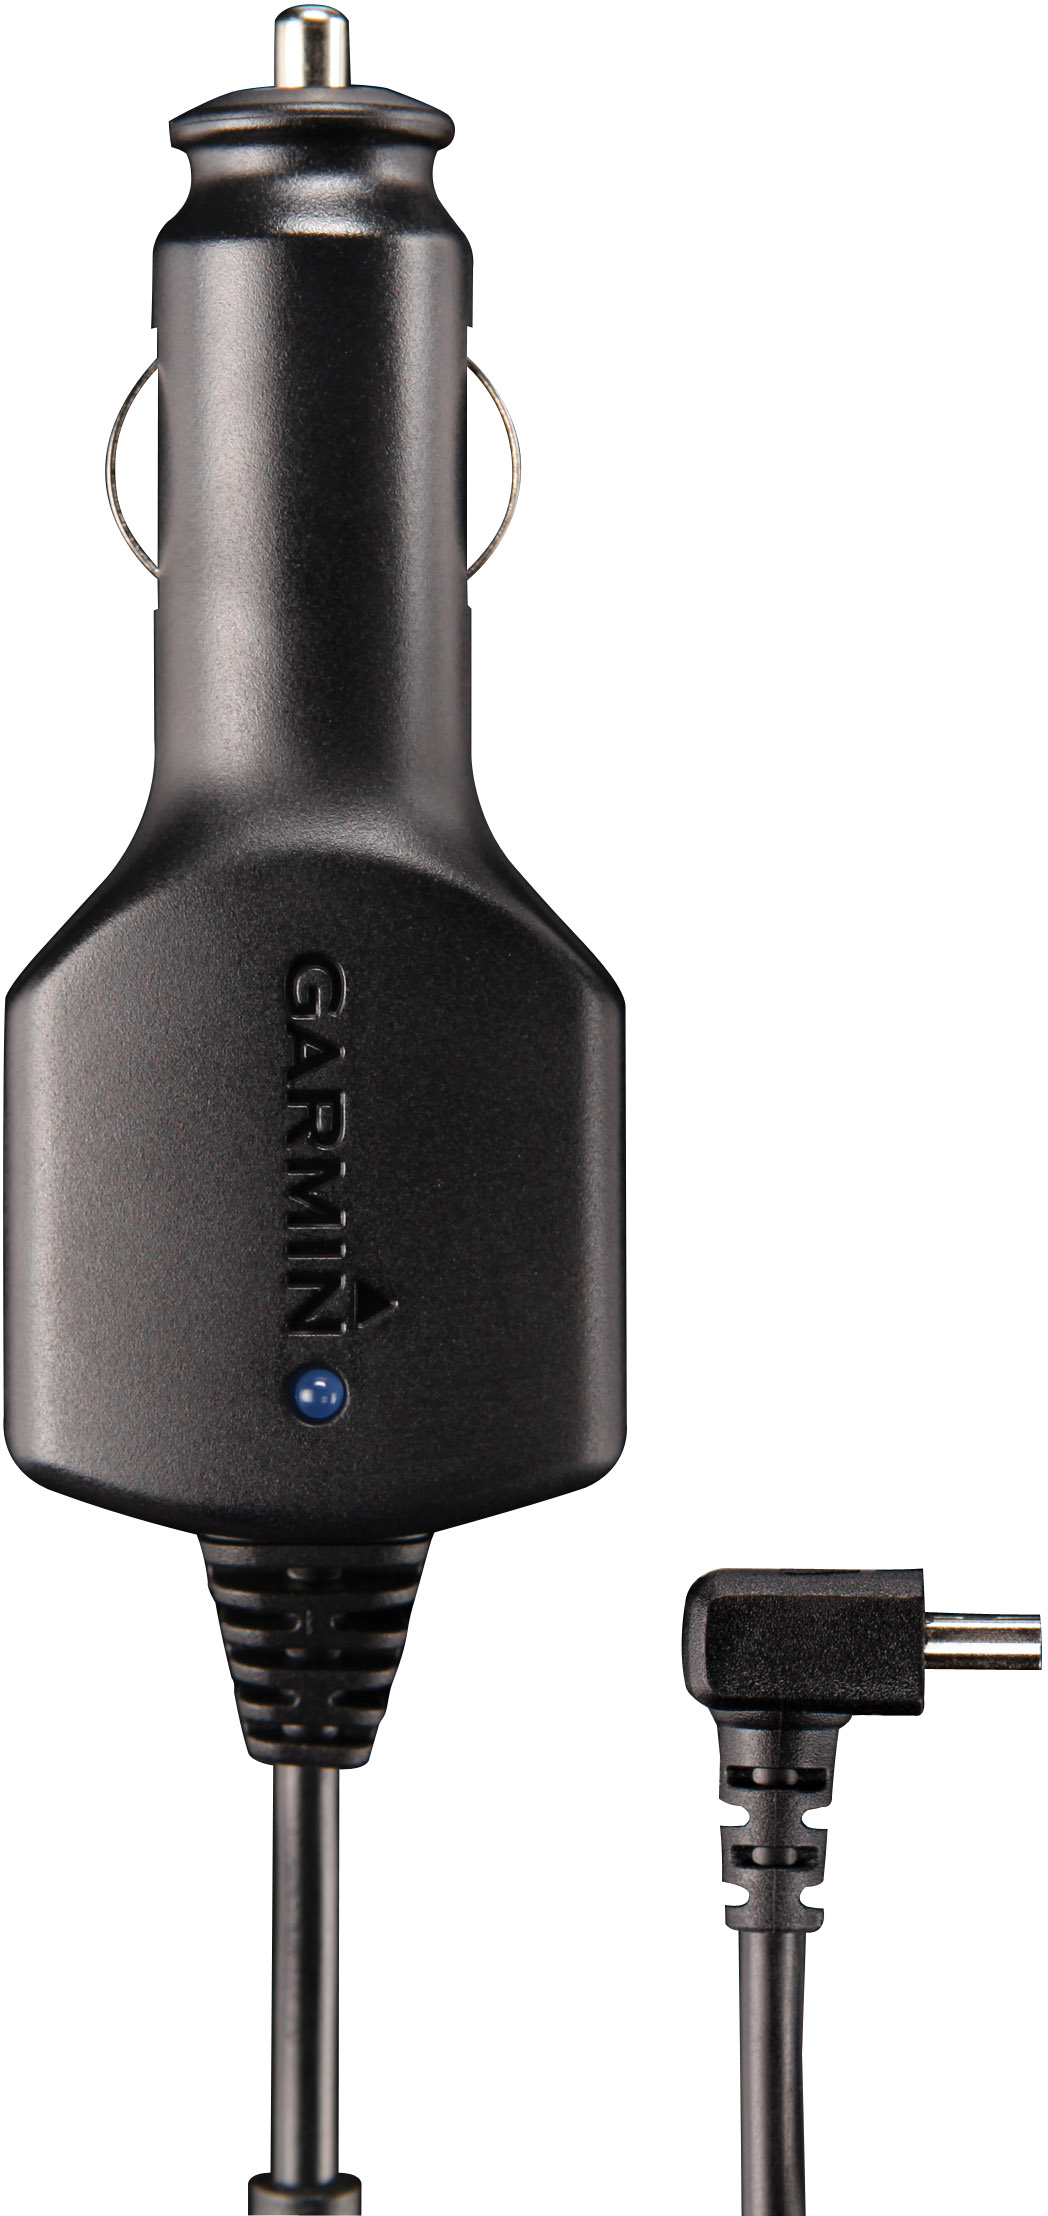 GARMIN Mini-USB, für passend Navigationssystem, Ladekabel, Schwarz